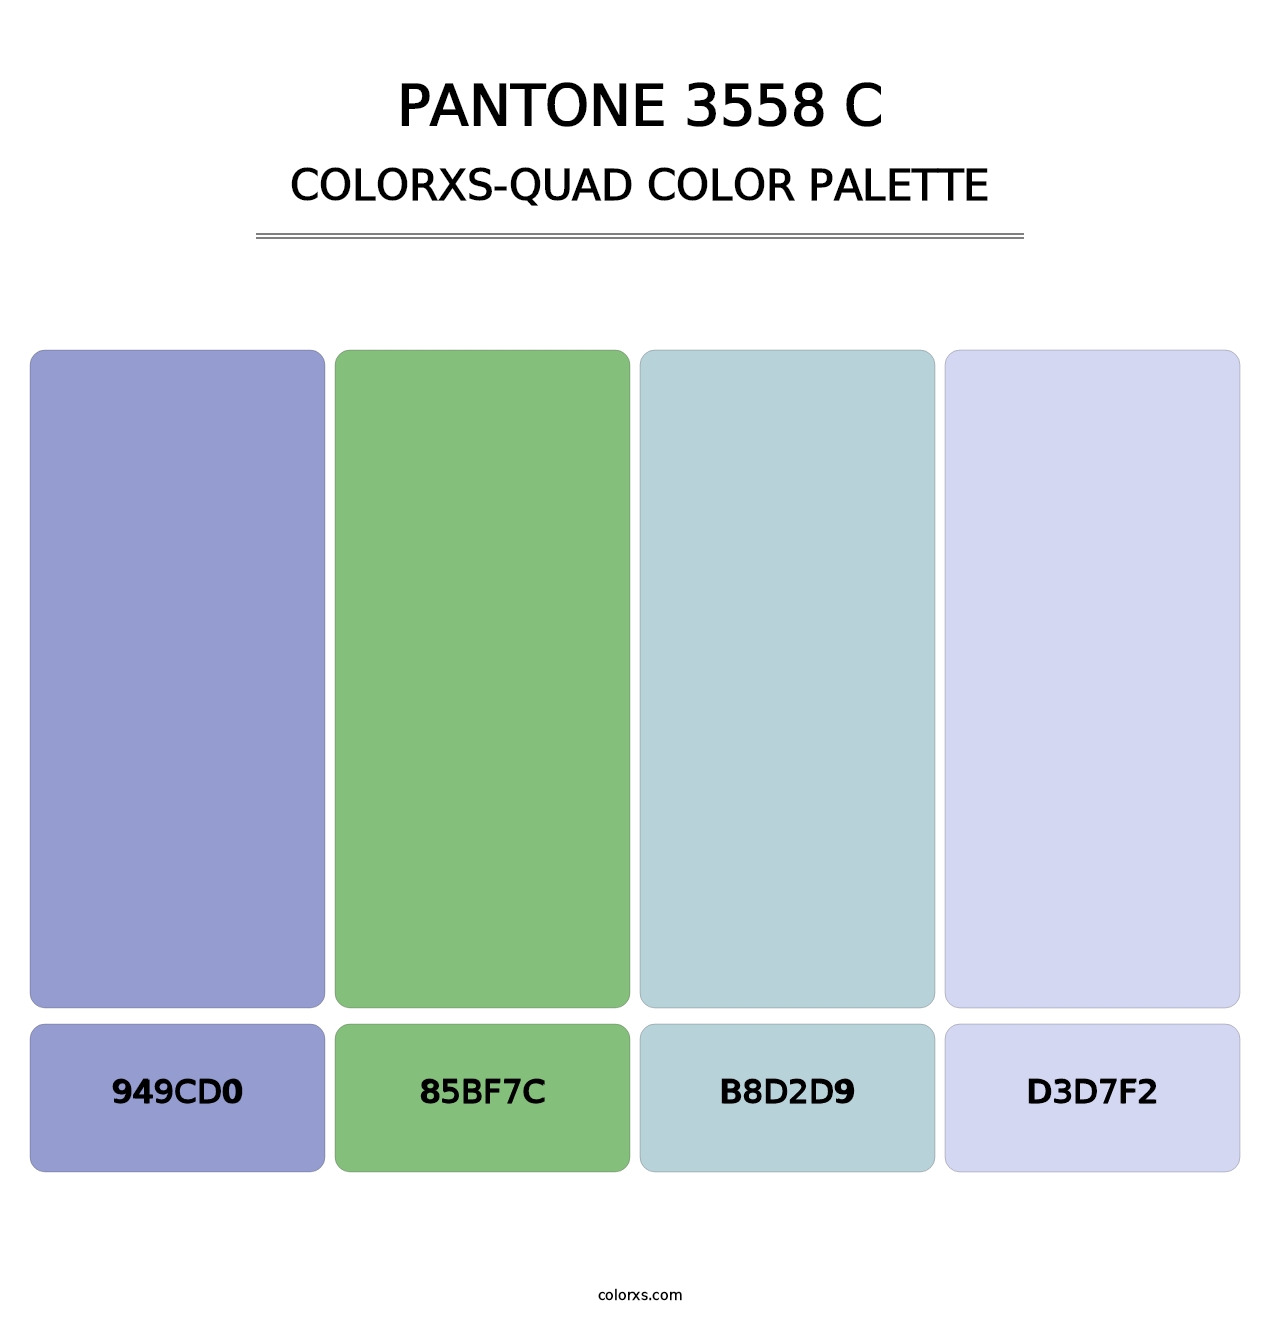 PANTONE 3558 C - Colorxs Quad Palette